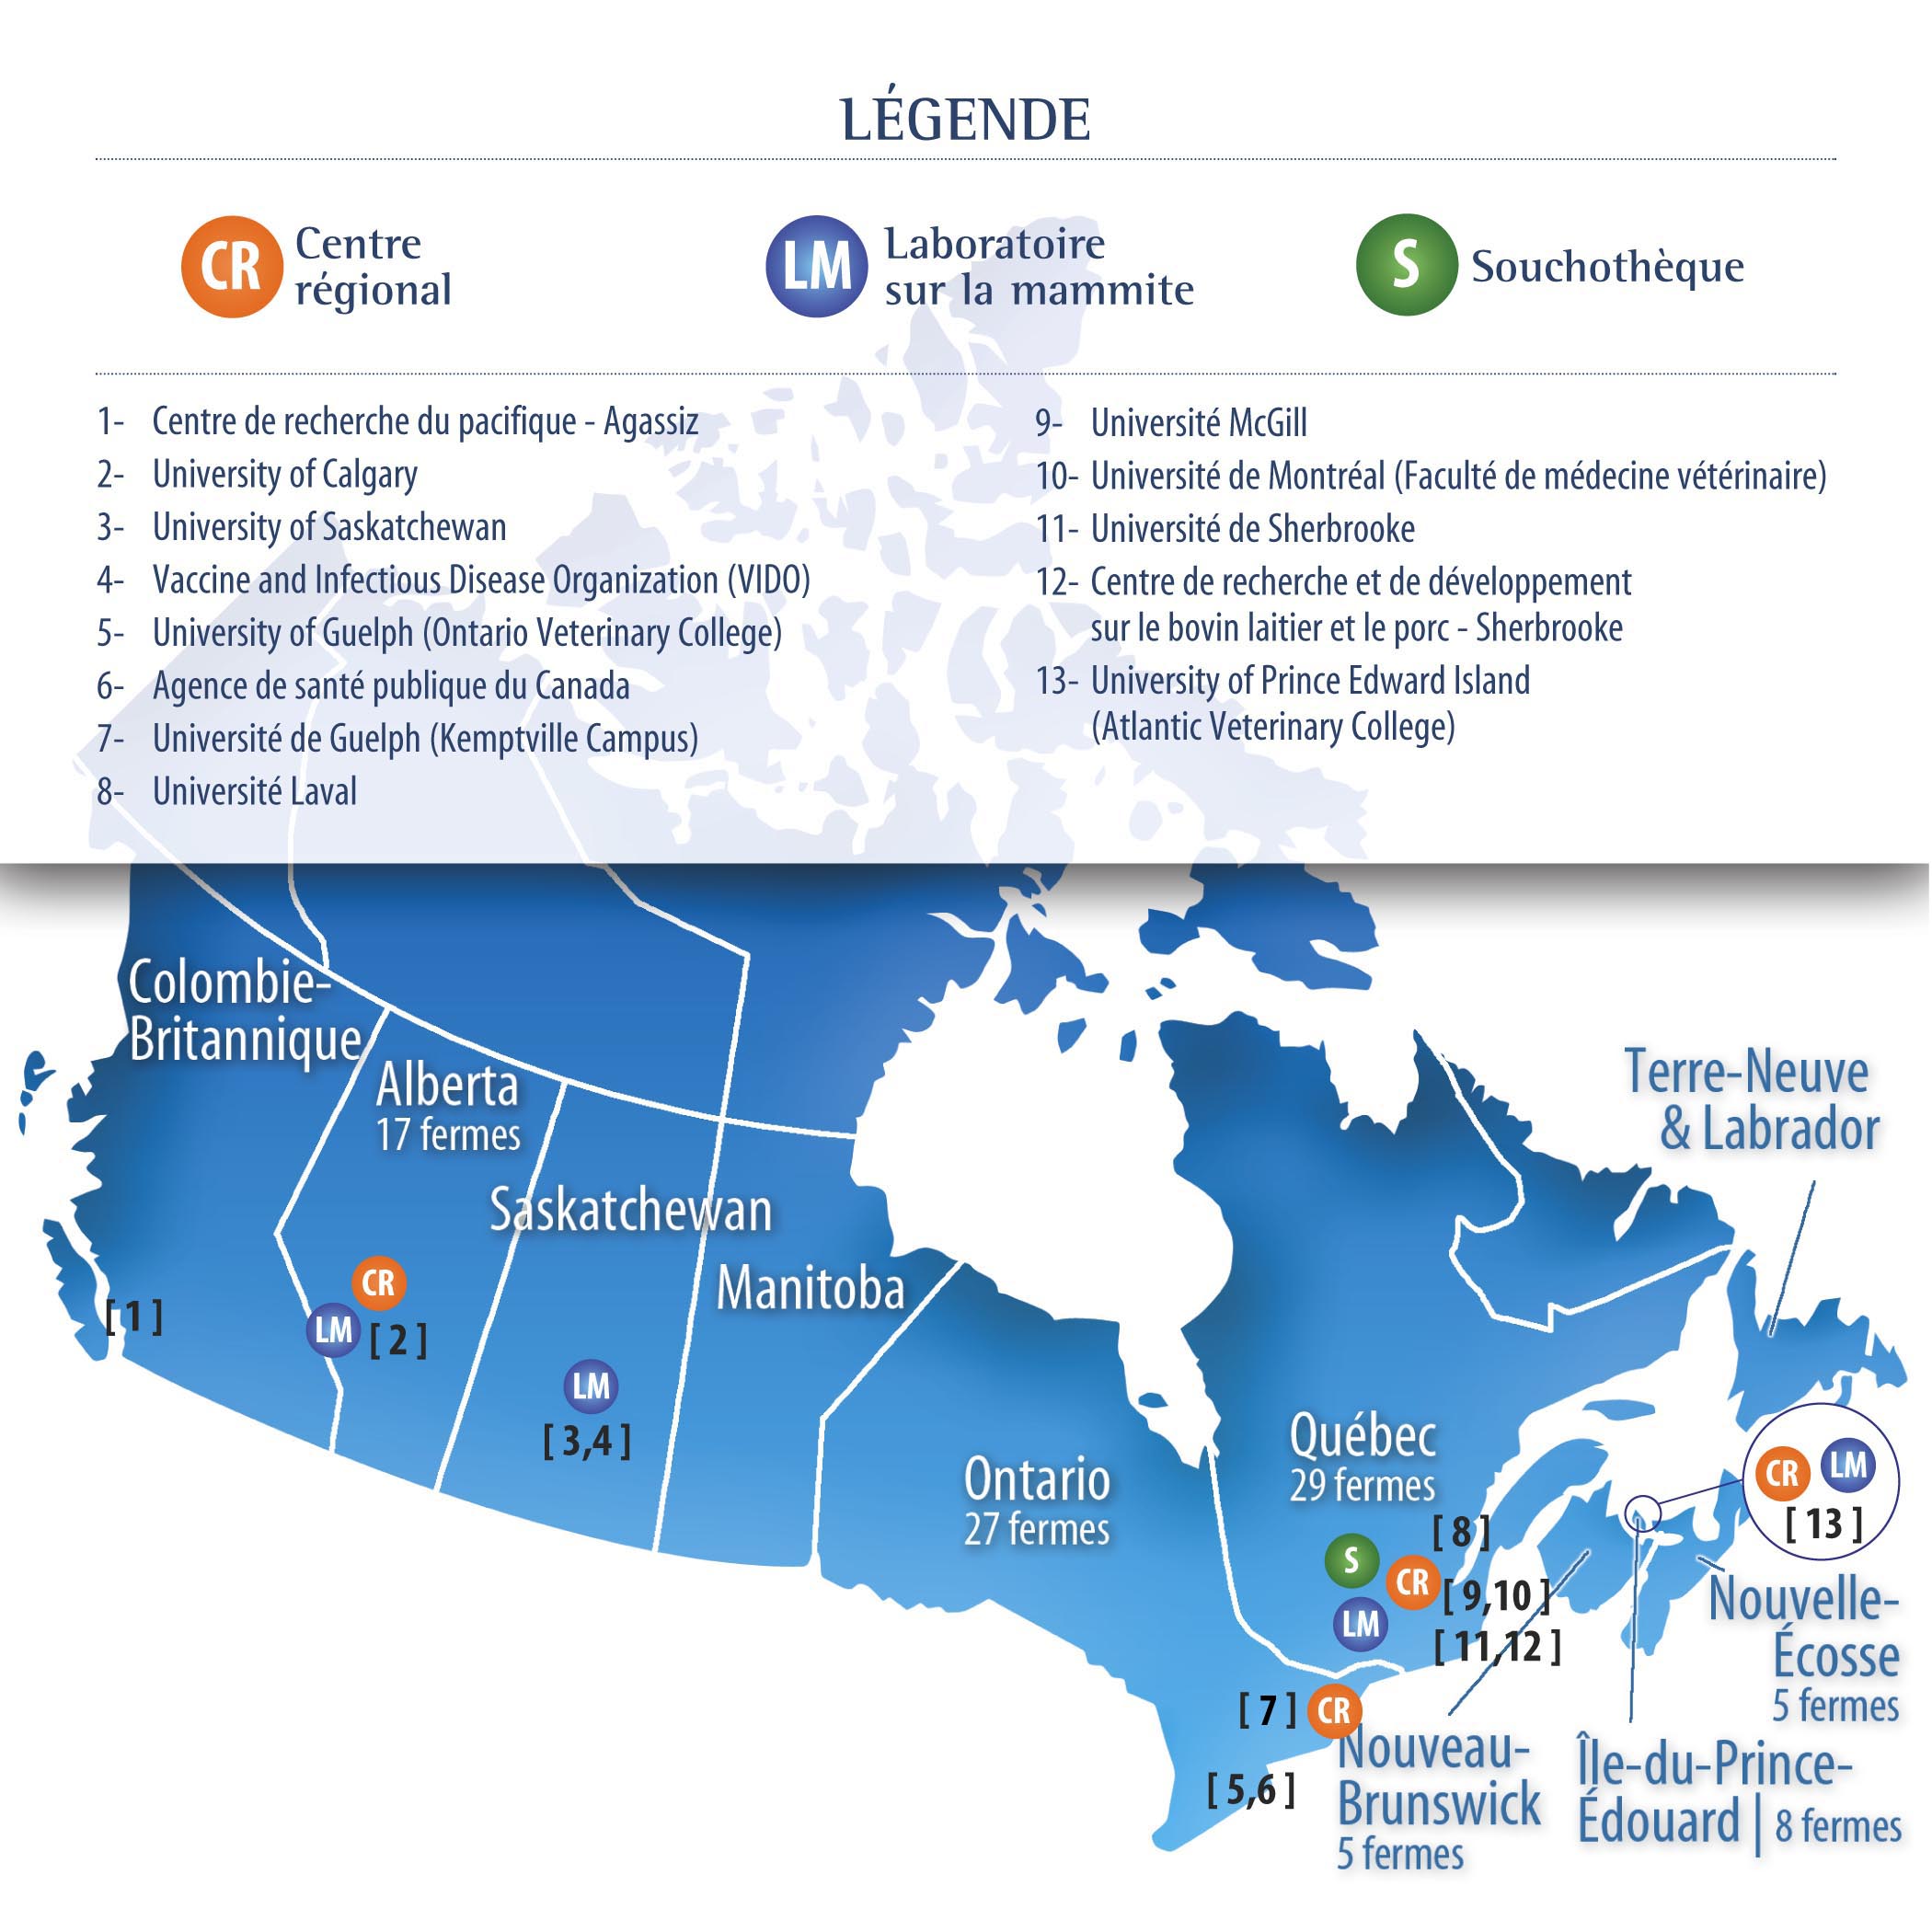 Les activités de recherche du Réseau sont réalisées dans plusieurs universités et centres de recherche à travers le Canada.